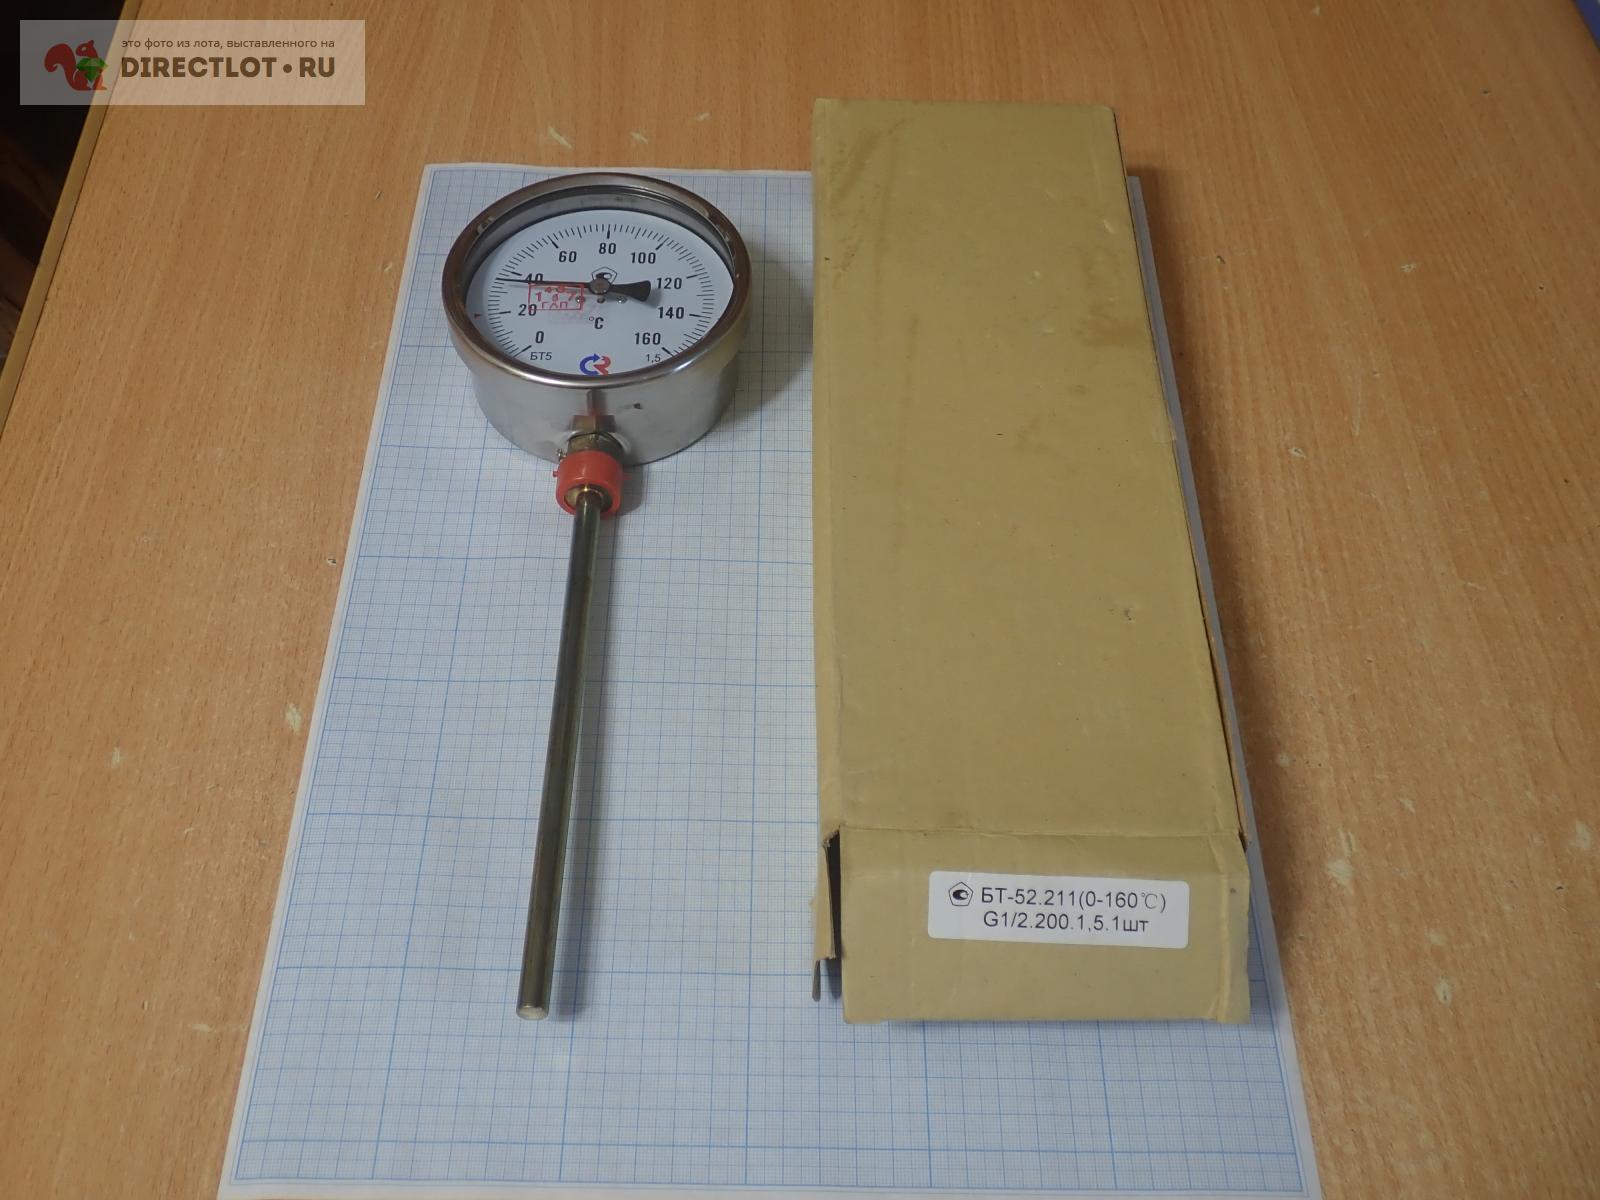 Термометр РОСМА БТ-52.211(0-160С) G1/2.200.1,5  в Воронеже цена .